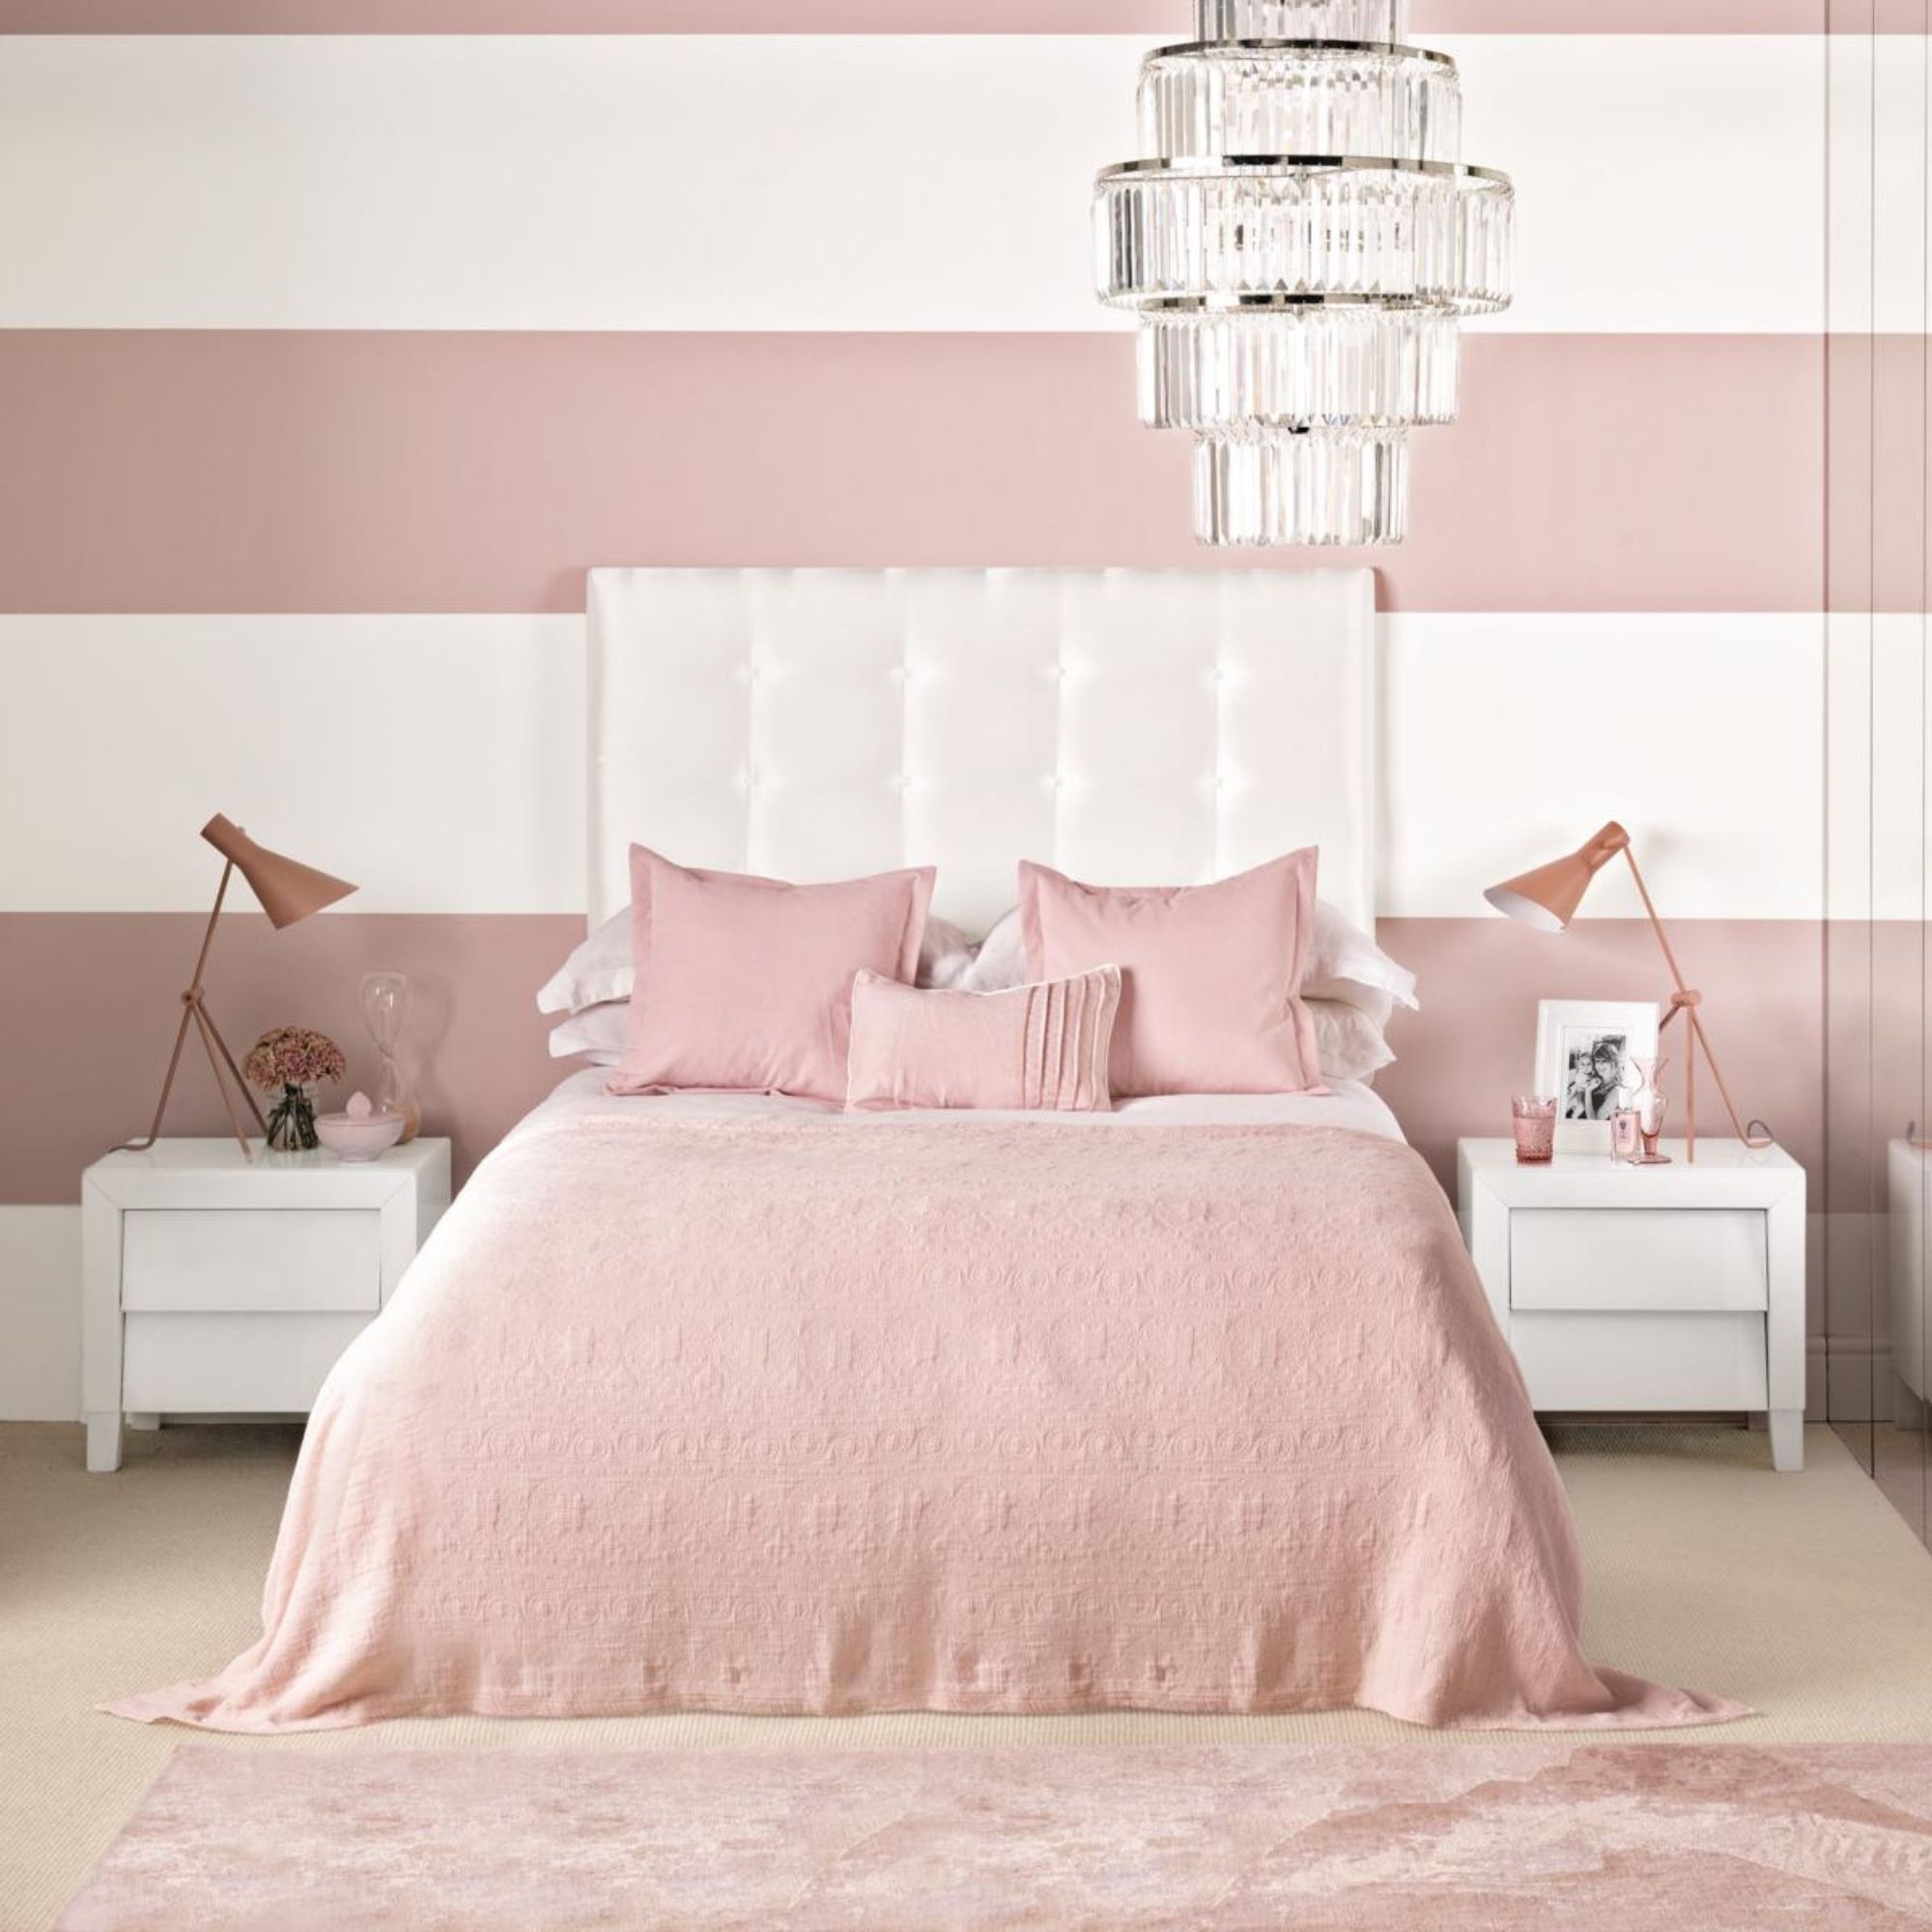 Розов теле бледно. Спальня в пыльно розовых тонах. Спальня в пыльно розовом цвете. Спальня в пастельных тонах. Бледно розовый цвет в интерьере.